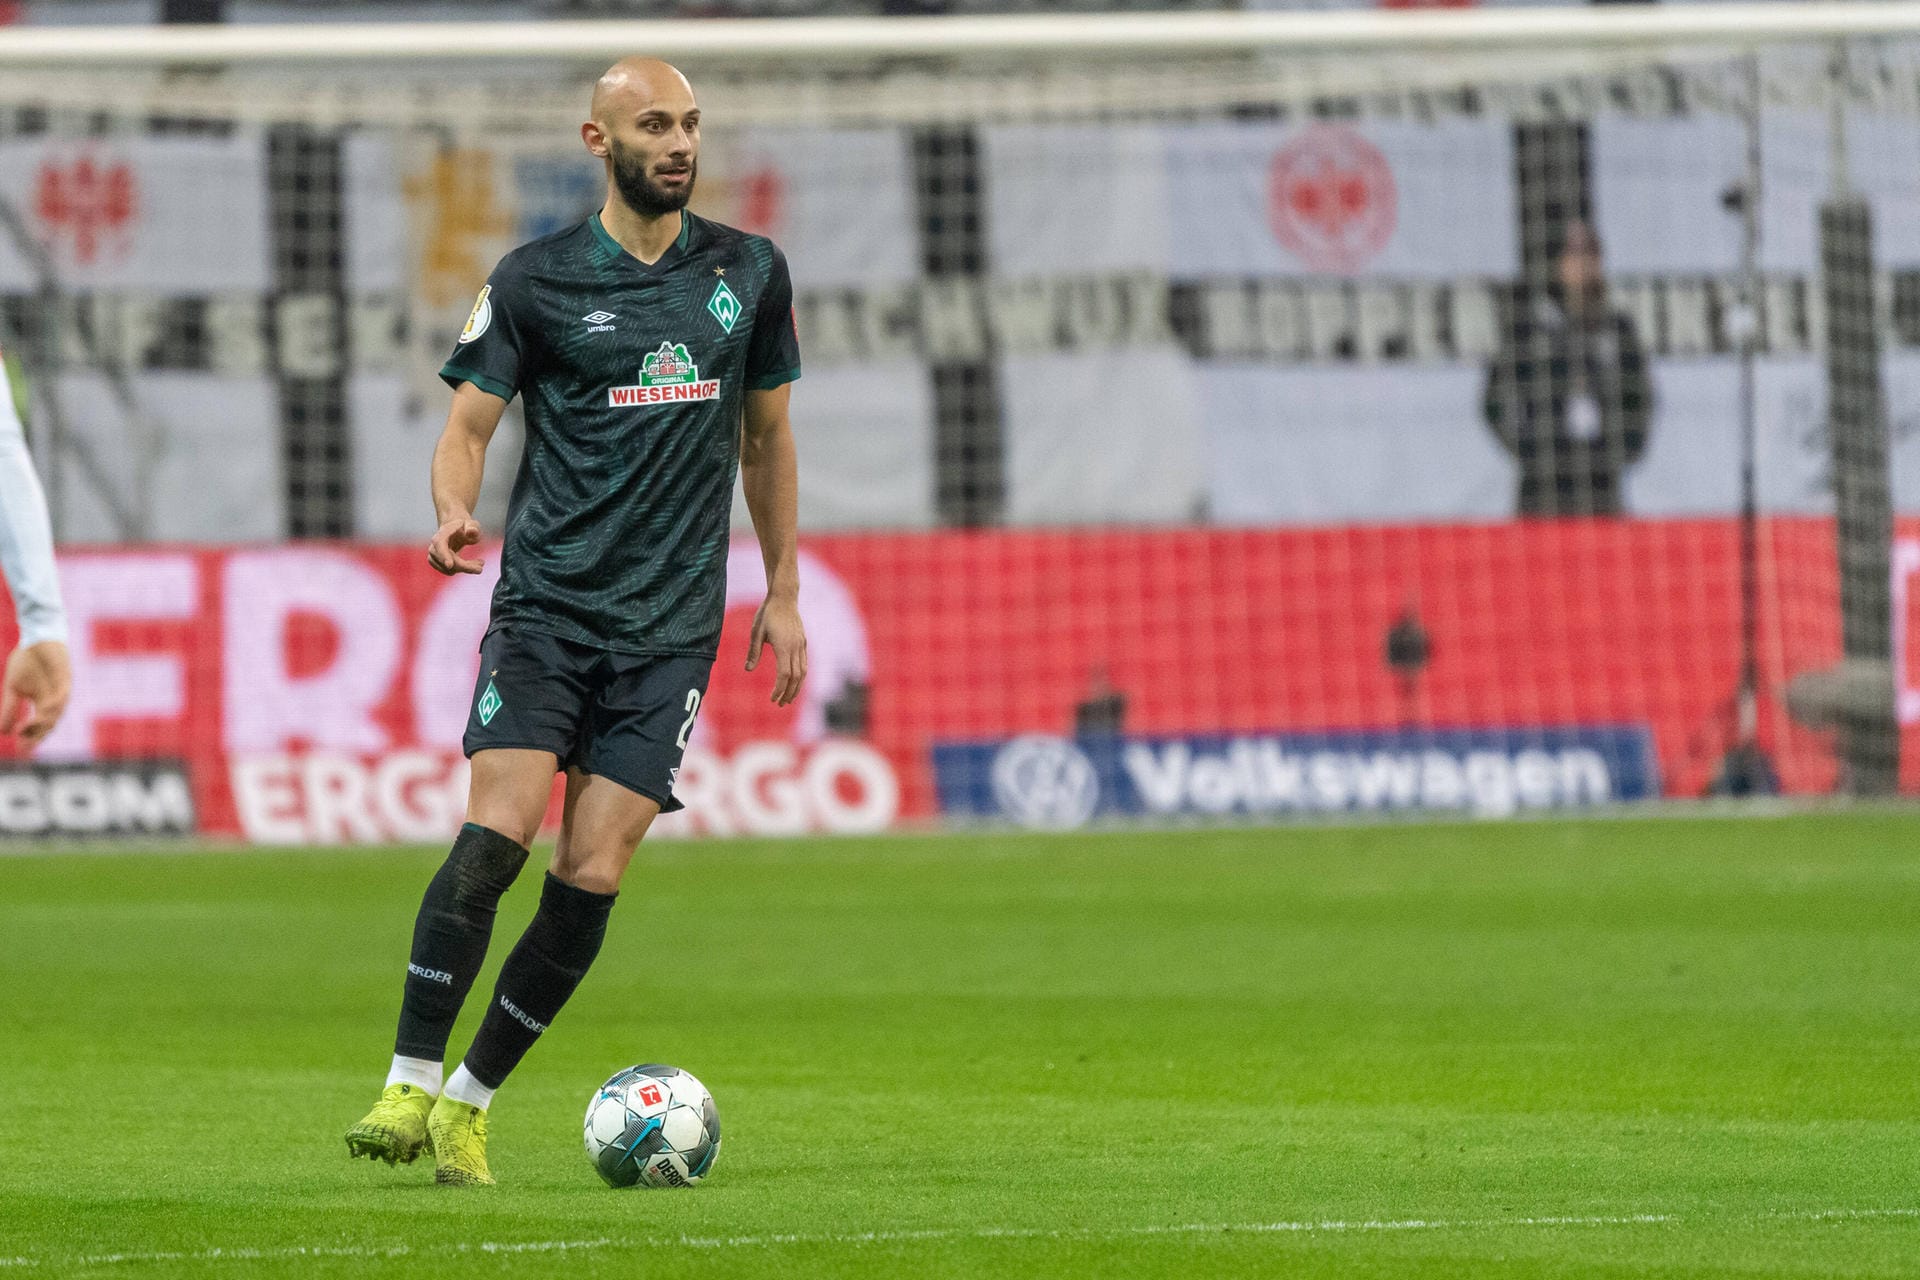 Bisher war Ömer Toprak nur ausgeliehen, jetzt gehört er fest zum Kader von Werder Bremen: Der türkische Nationalspieler wechselt für 3,5 Millionen Euro vom BVB an die Weser.